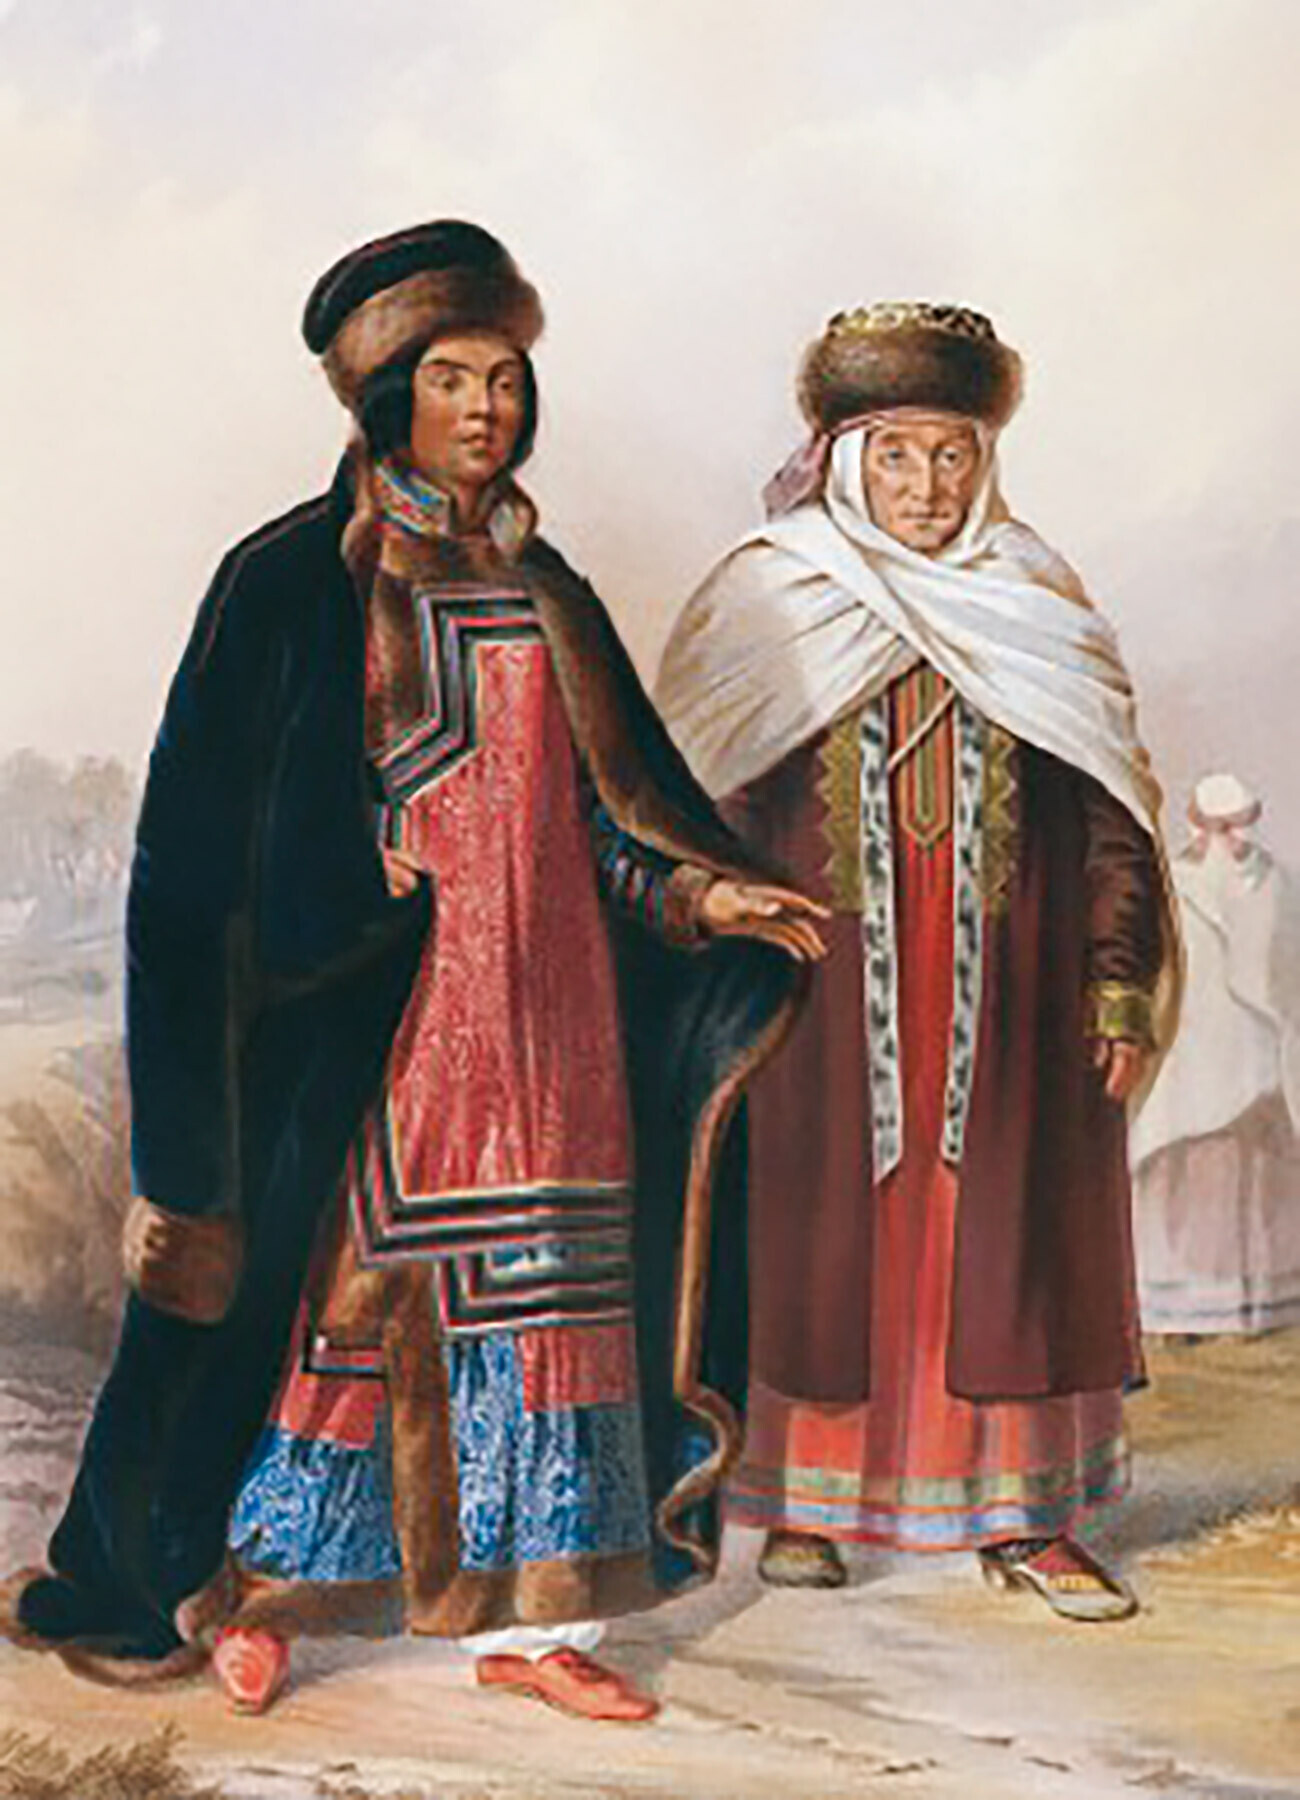 Tártaros siberianos das províncias de Ienissei e Tomsk
